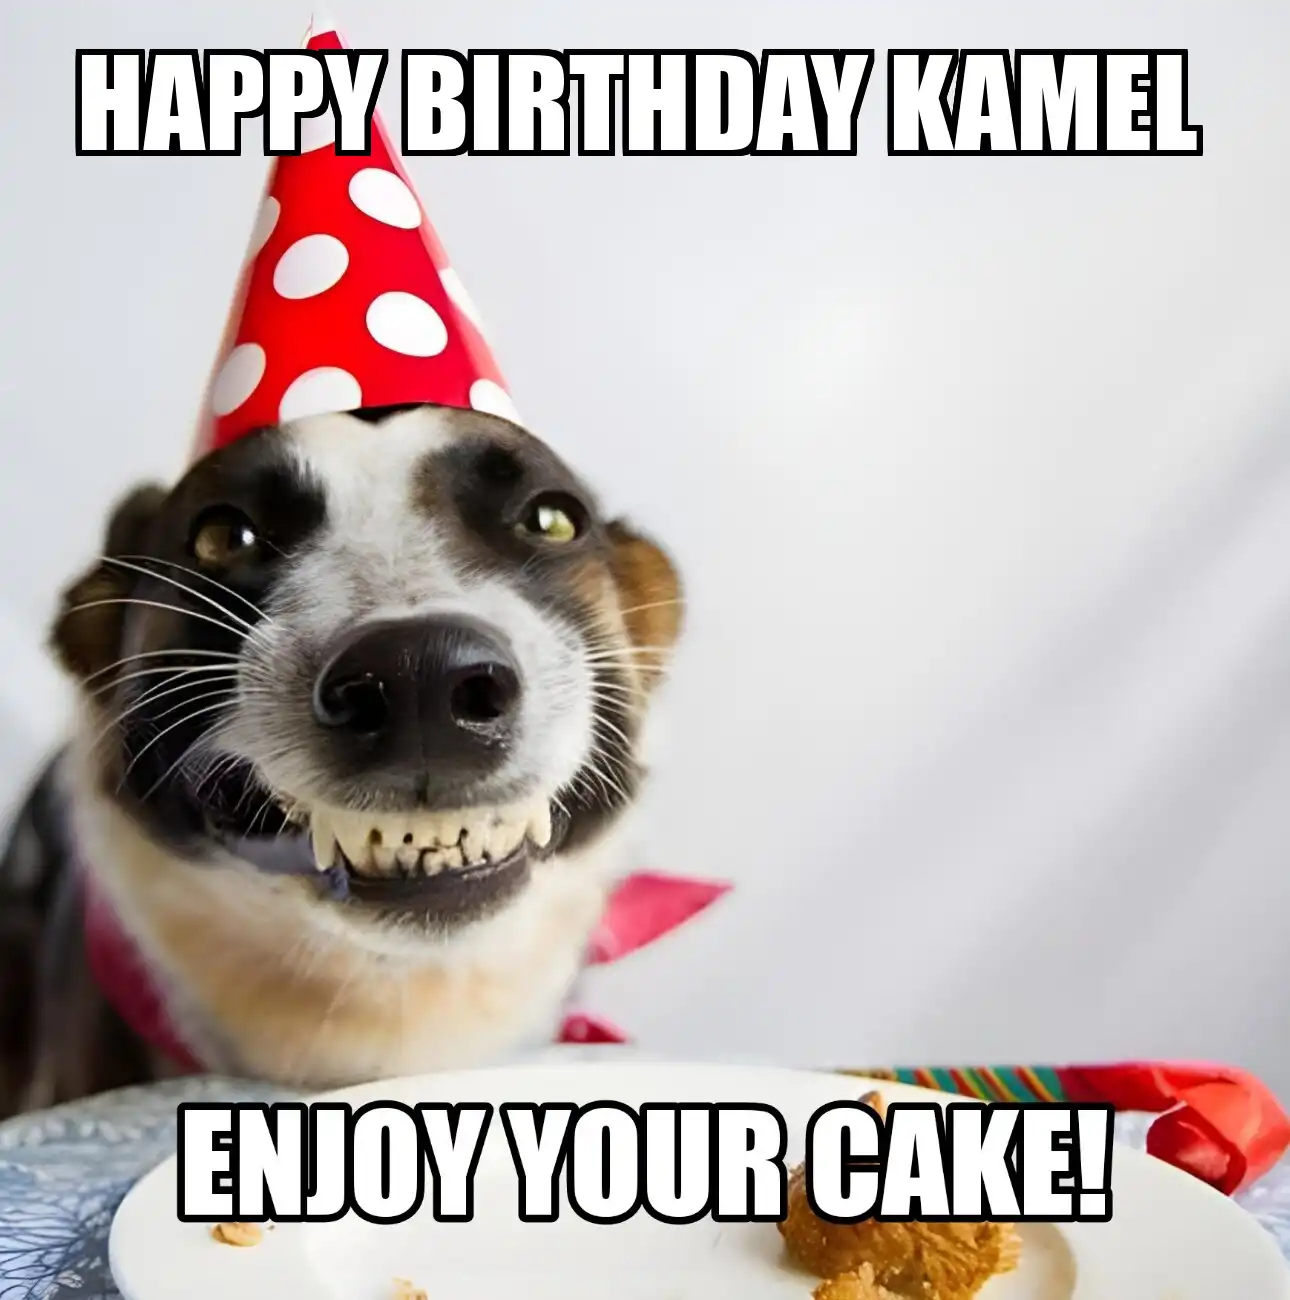 Happy Birthday Kamel Enjoy Your Cake Dog Meme